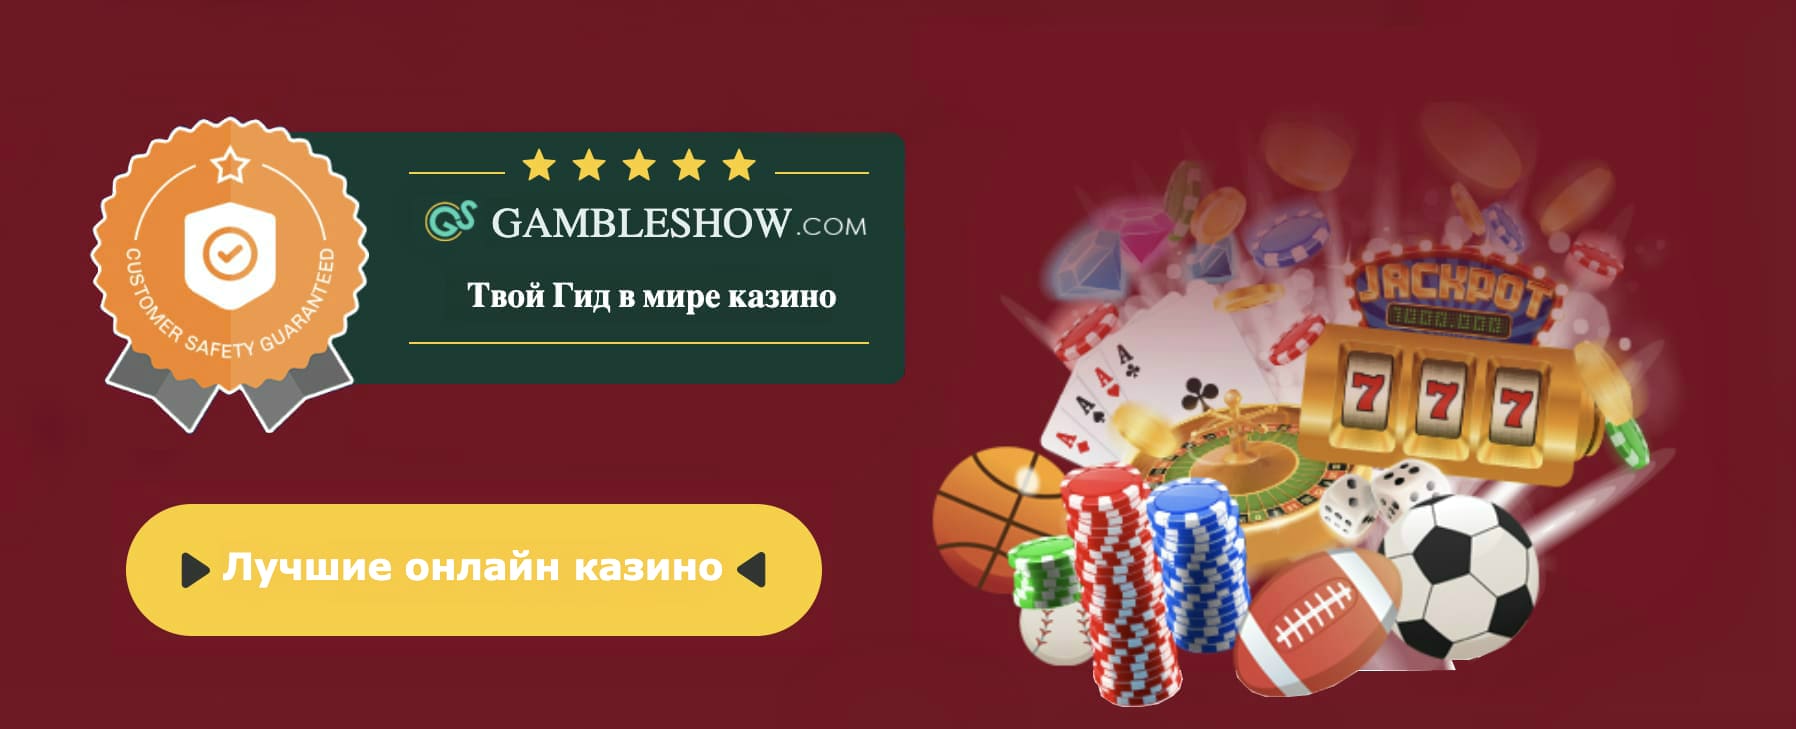 Покер старс онлайн играть бесплатно на русском играть в карты пасьянс желание